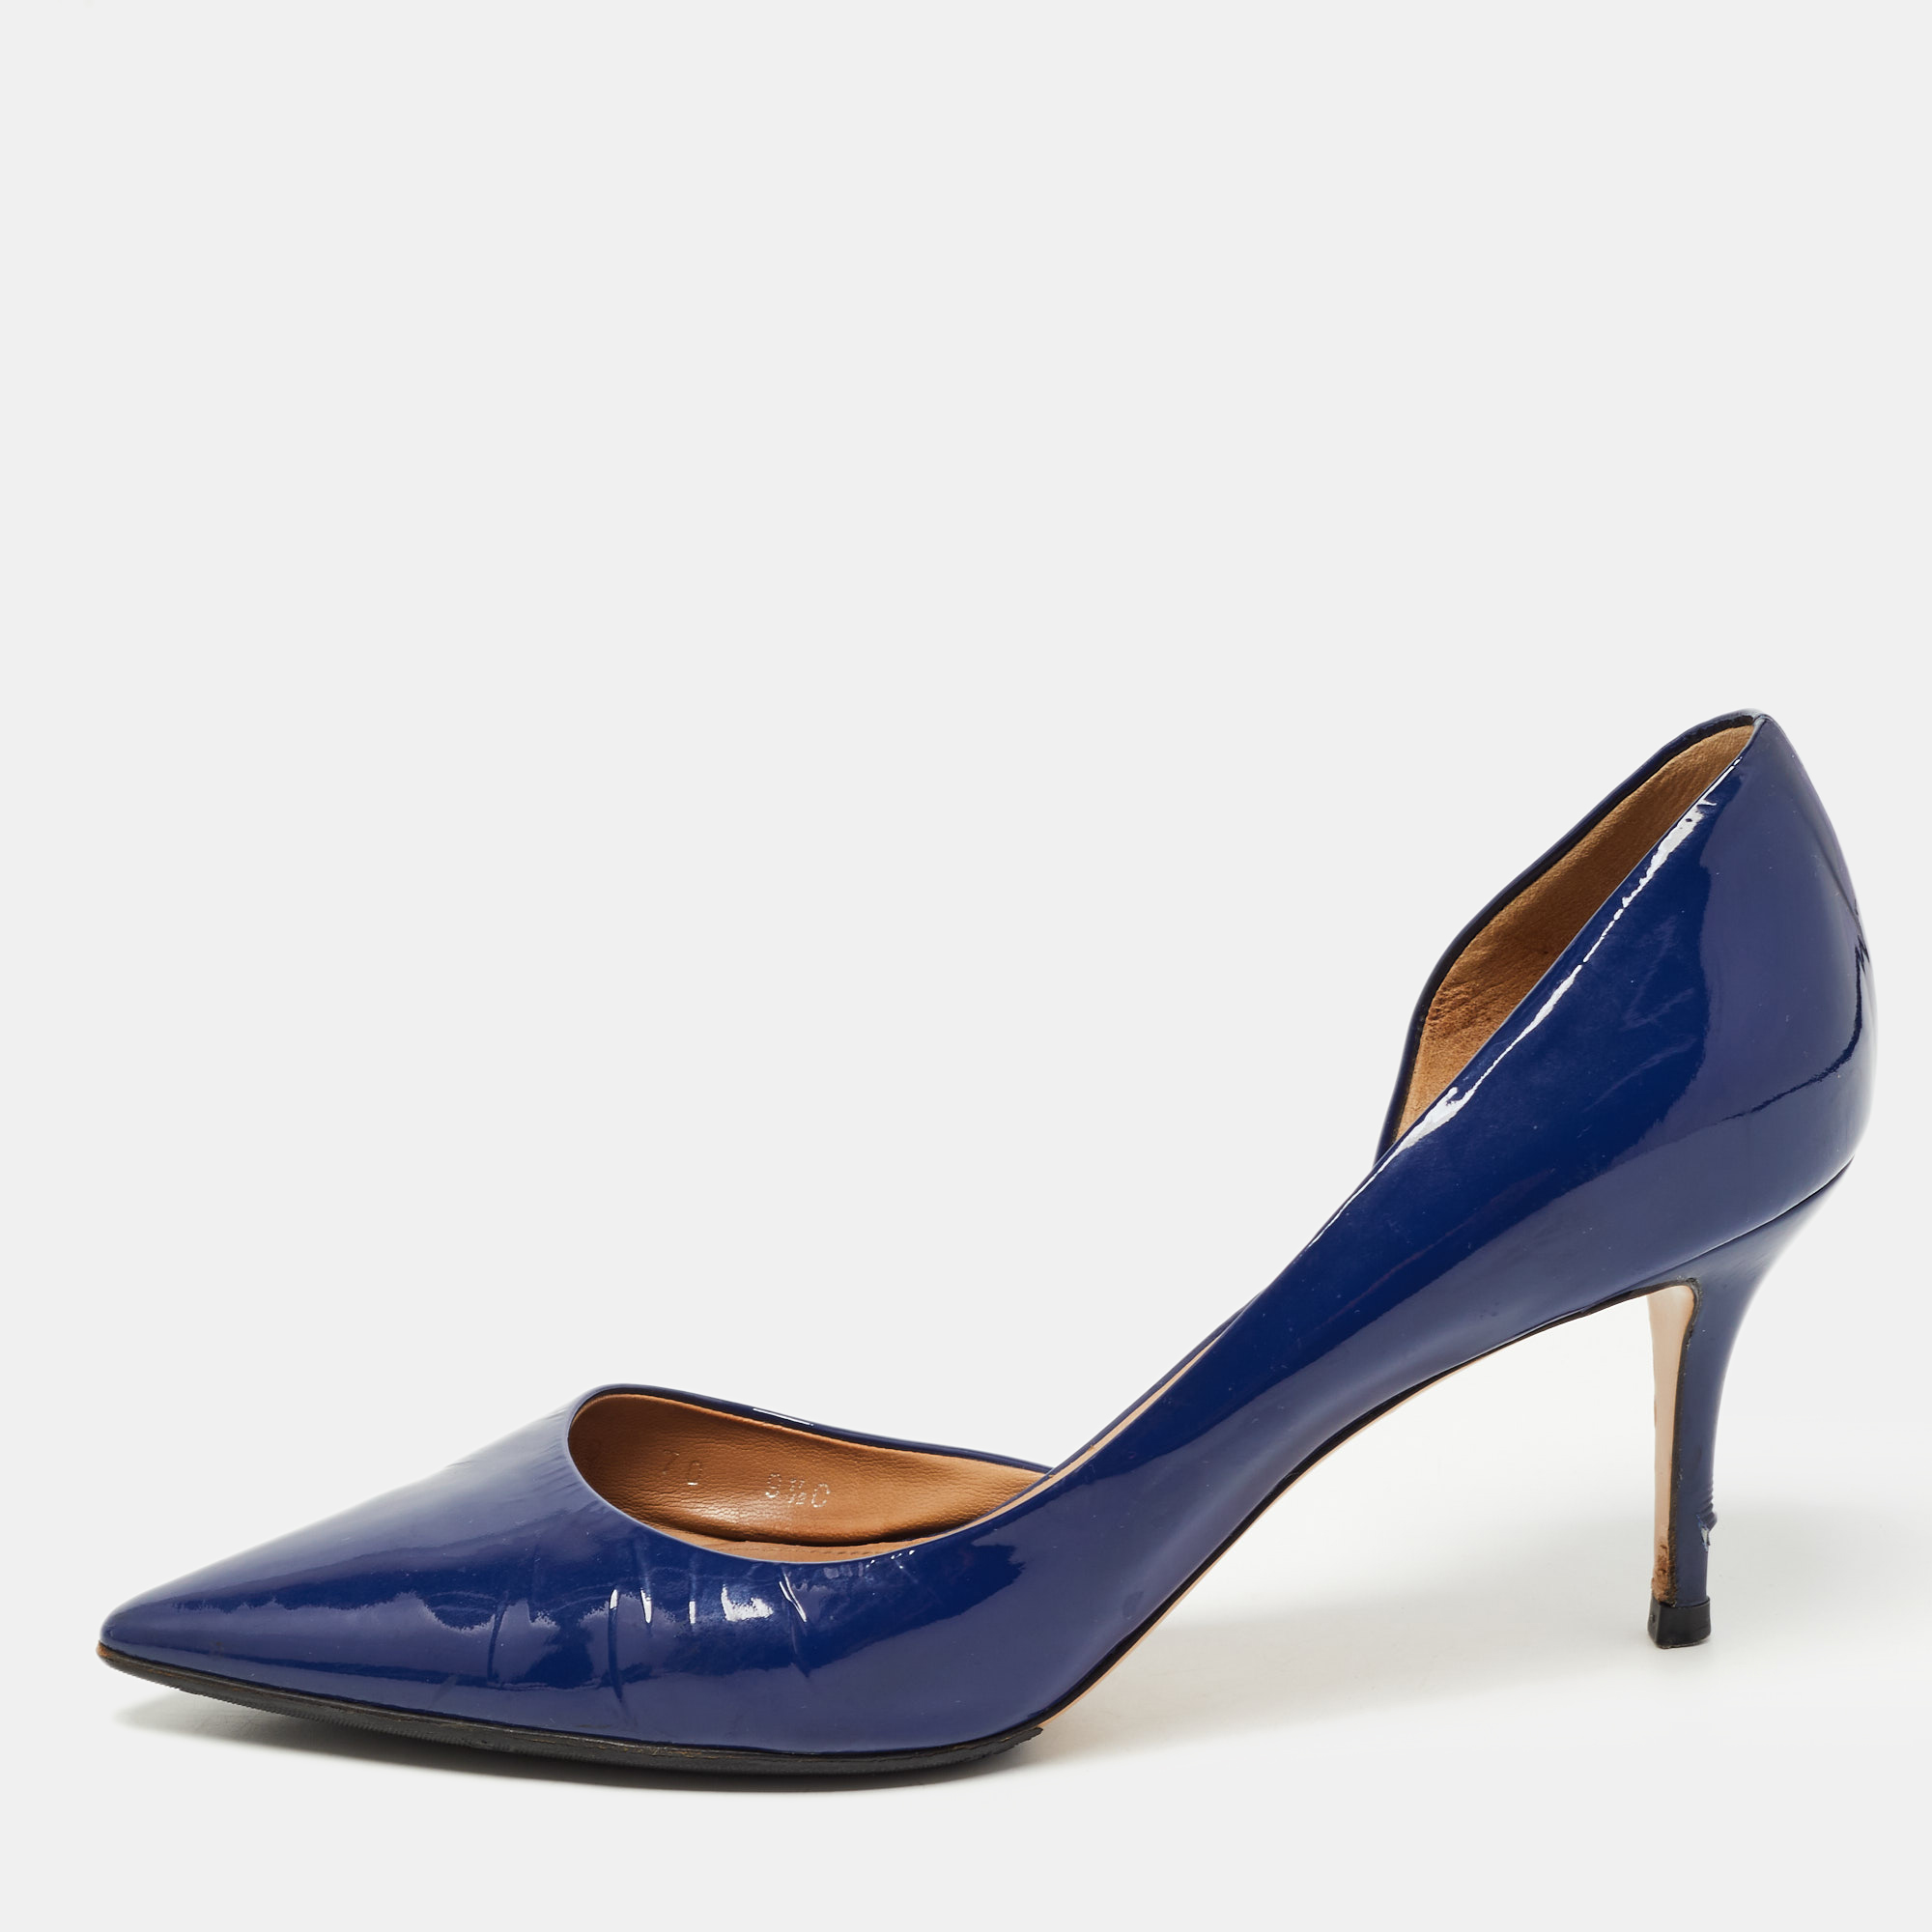 Salvatore Ferragamo Blue Patent Leather D'Orsay Pumps Size 40